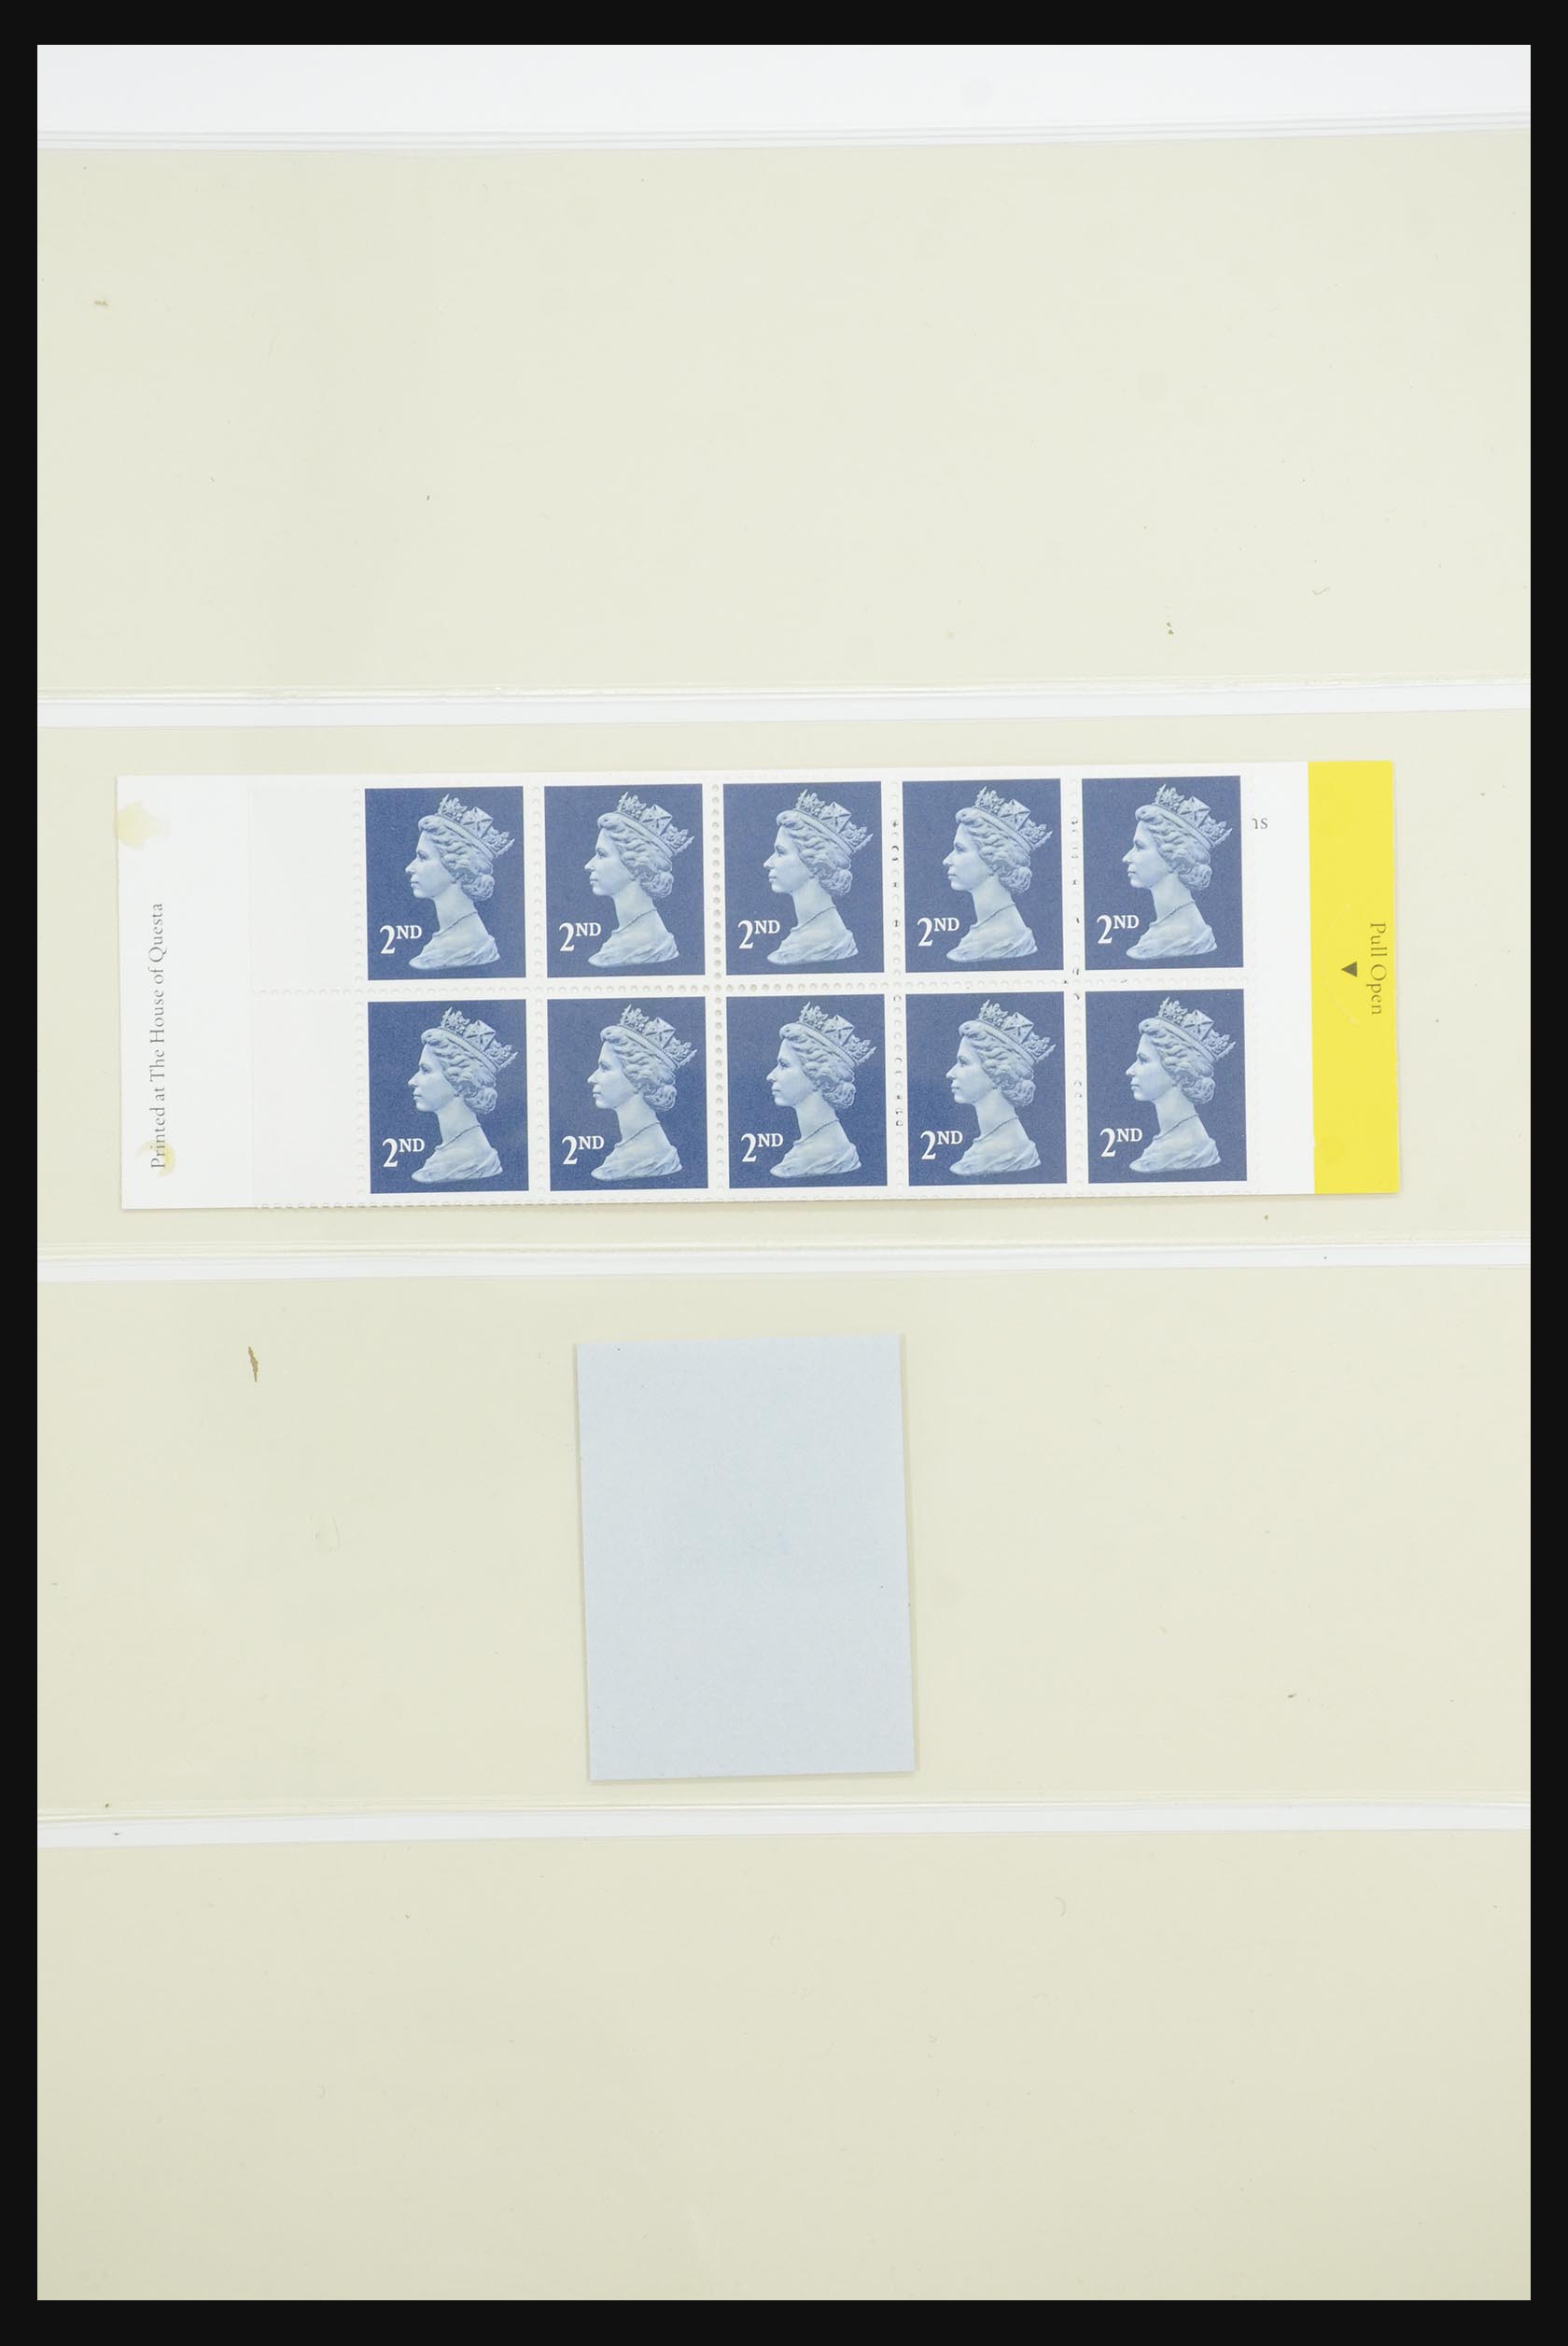 31960 062 - 31960 Engeland postzegelboekjes 1989-2000.